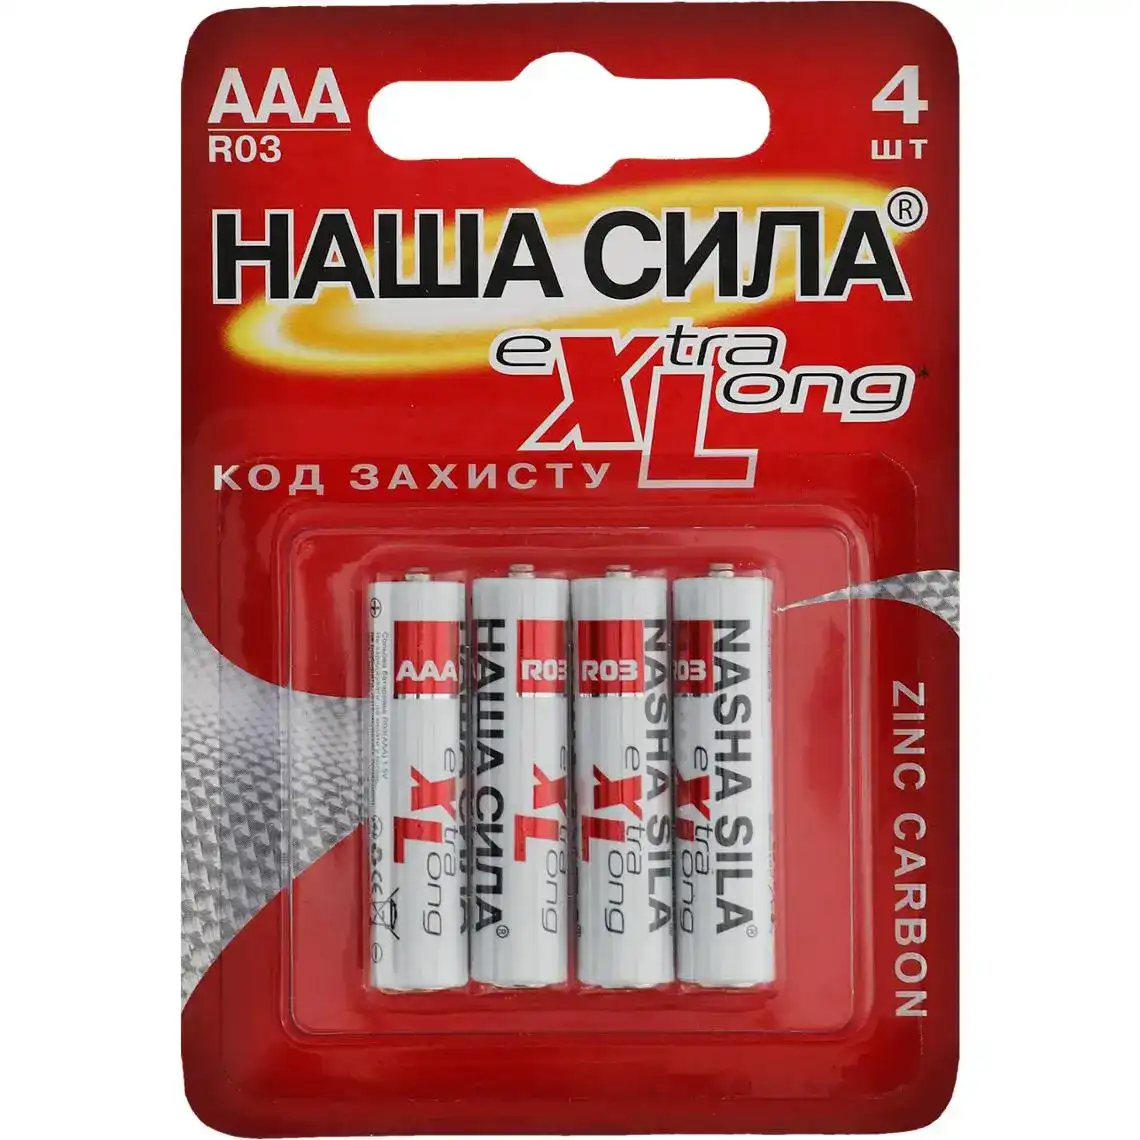 Батарейки Наша Сила Extra Long AAA R03 4 шт.